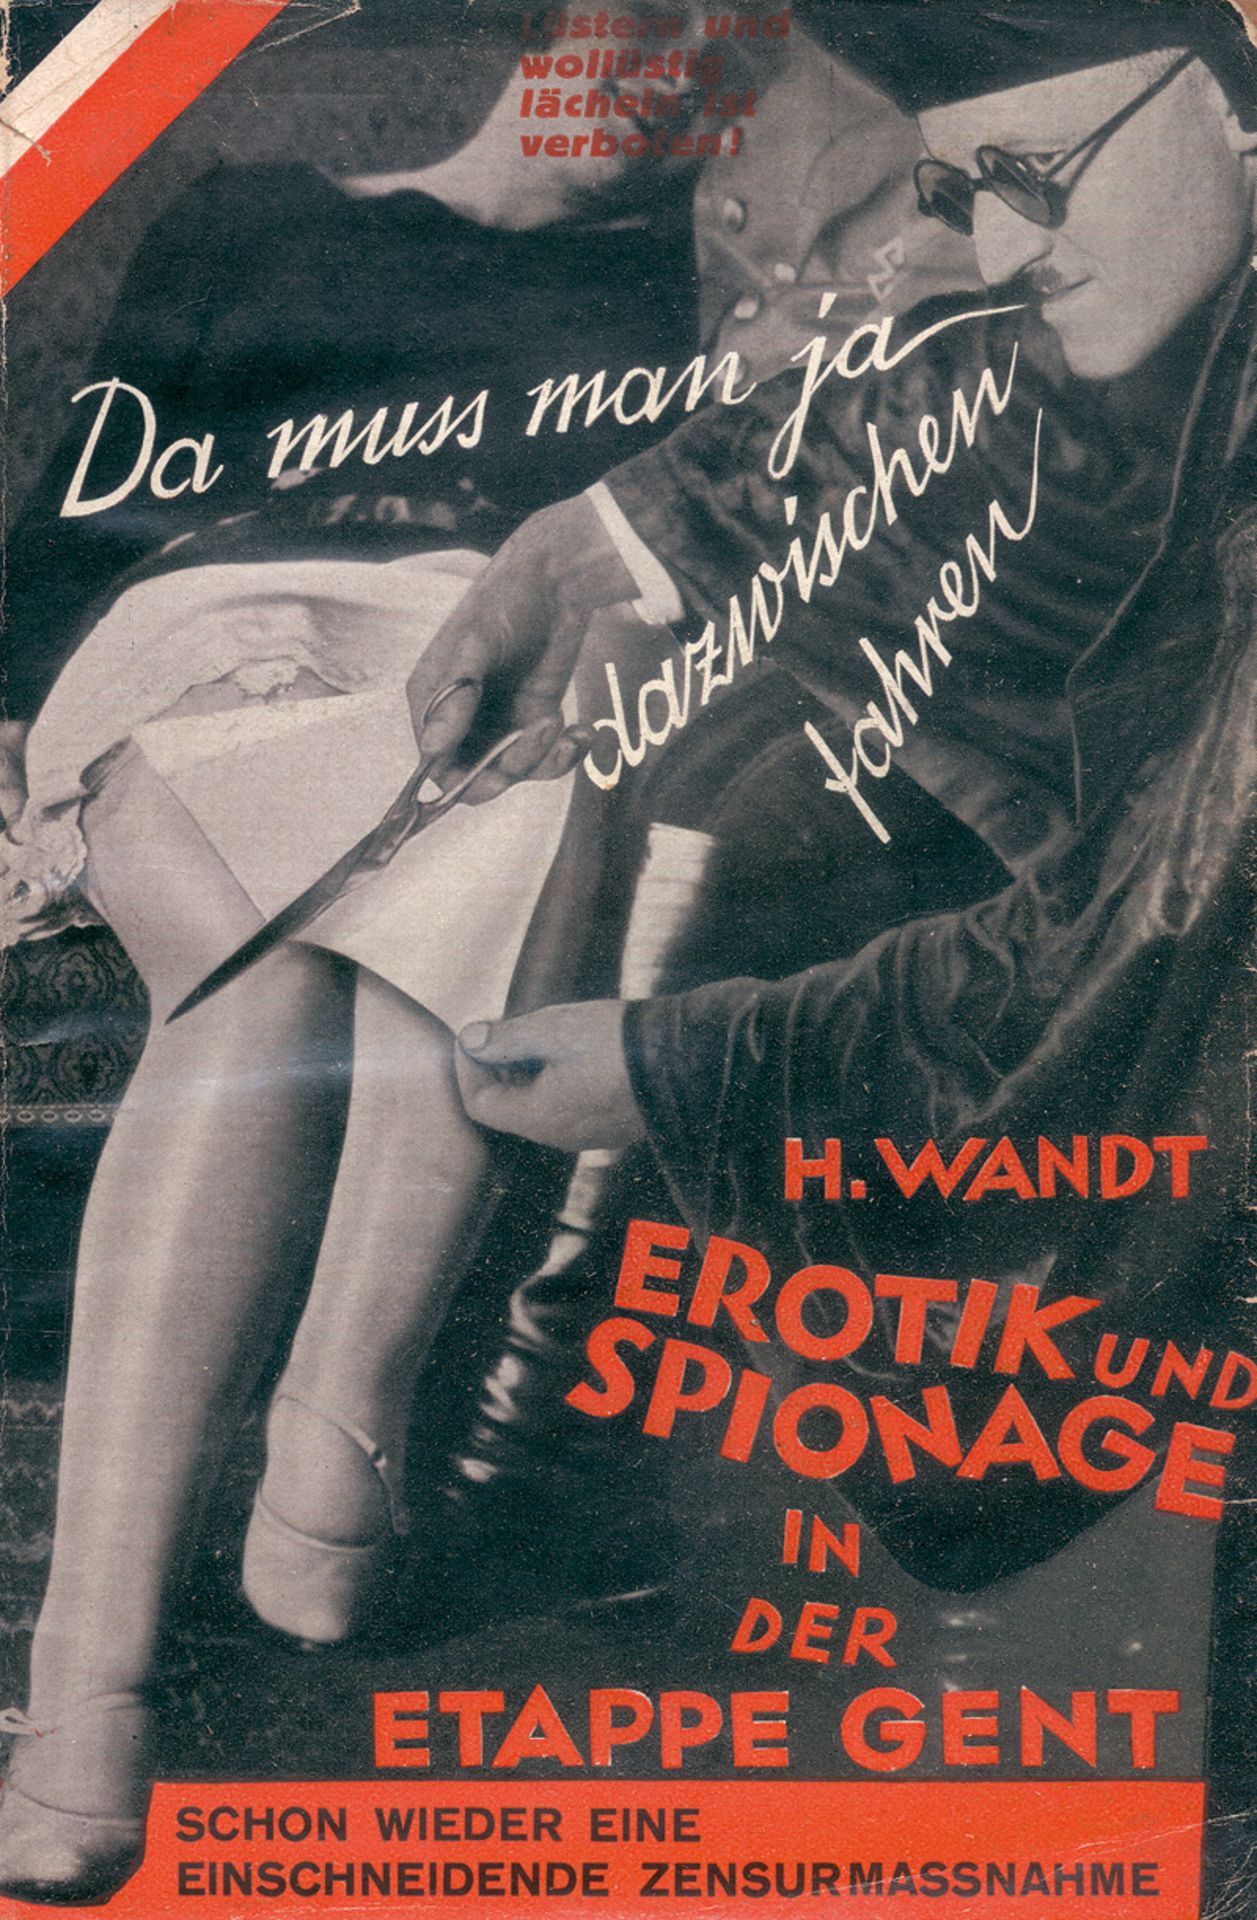 Wandt, Heinrich und Heartfield, Joh...: Erotik und Spionage in der Etappe Gent - Bild 2 aus 3